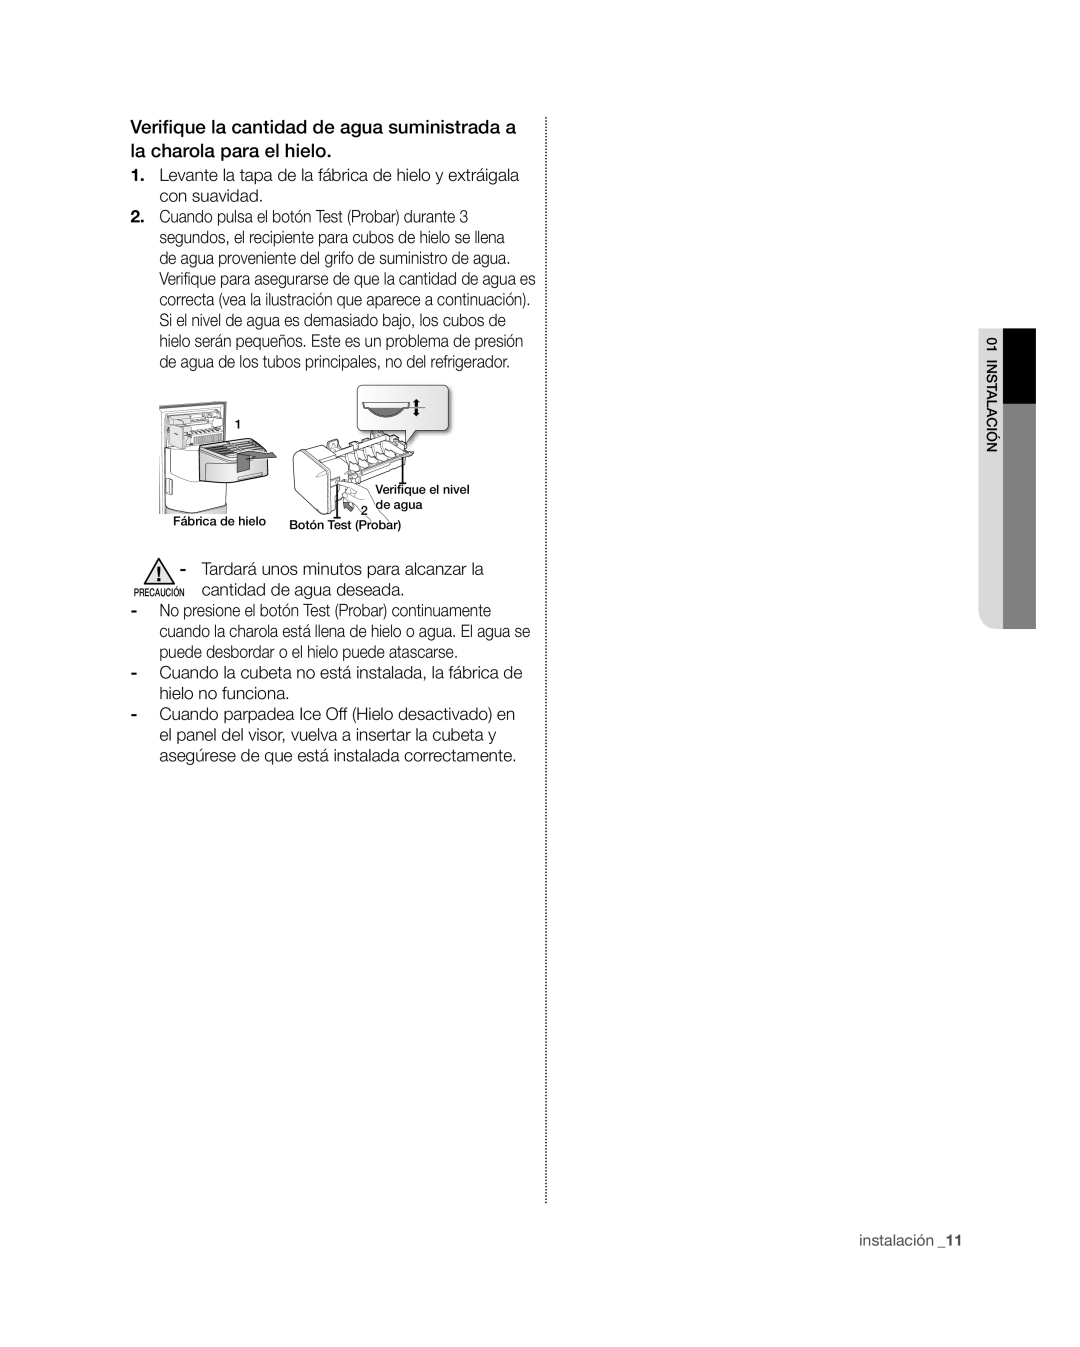 Samsung RSG309** user manual Verifique la cantidad de agua suministrada a la charola para el hielo, instalación 